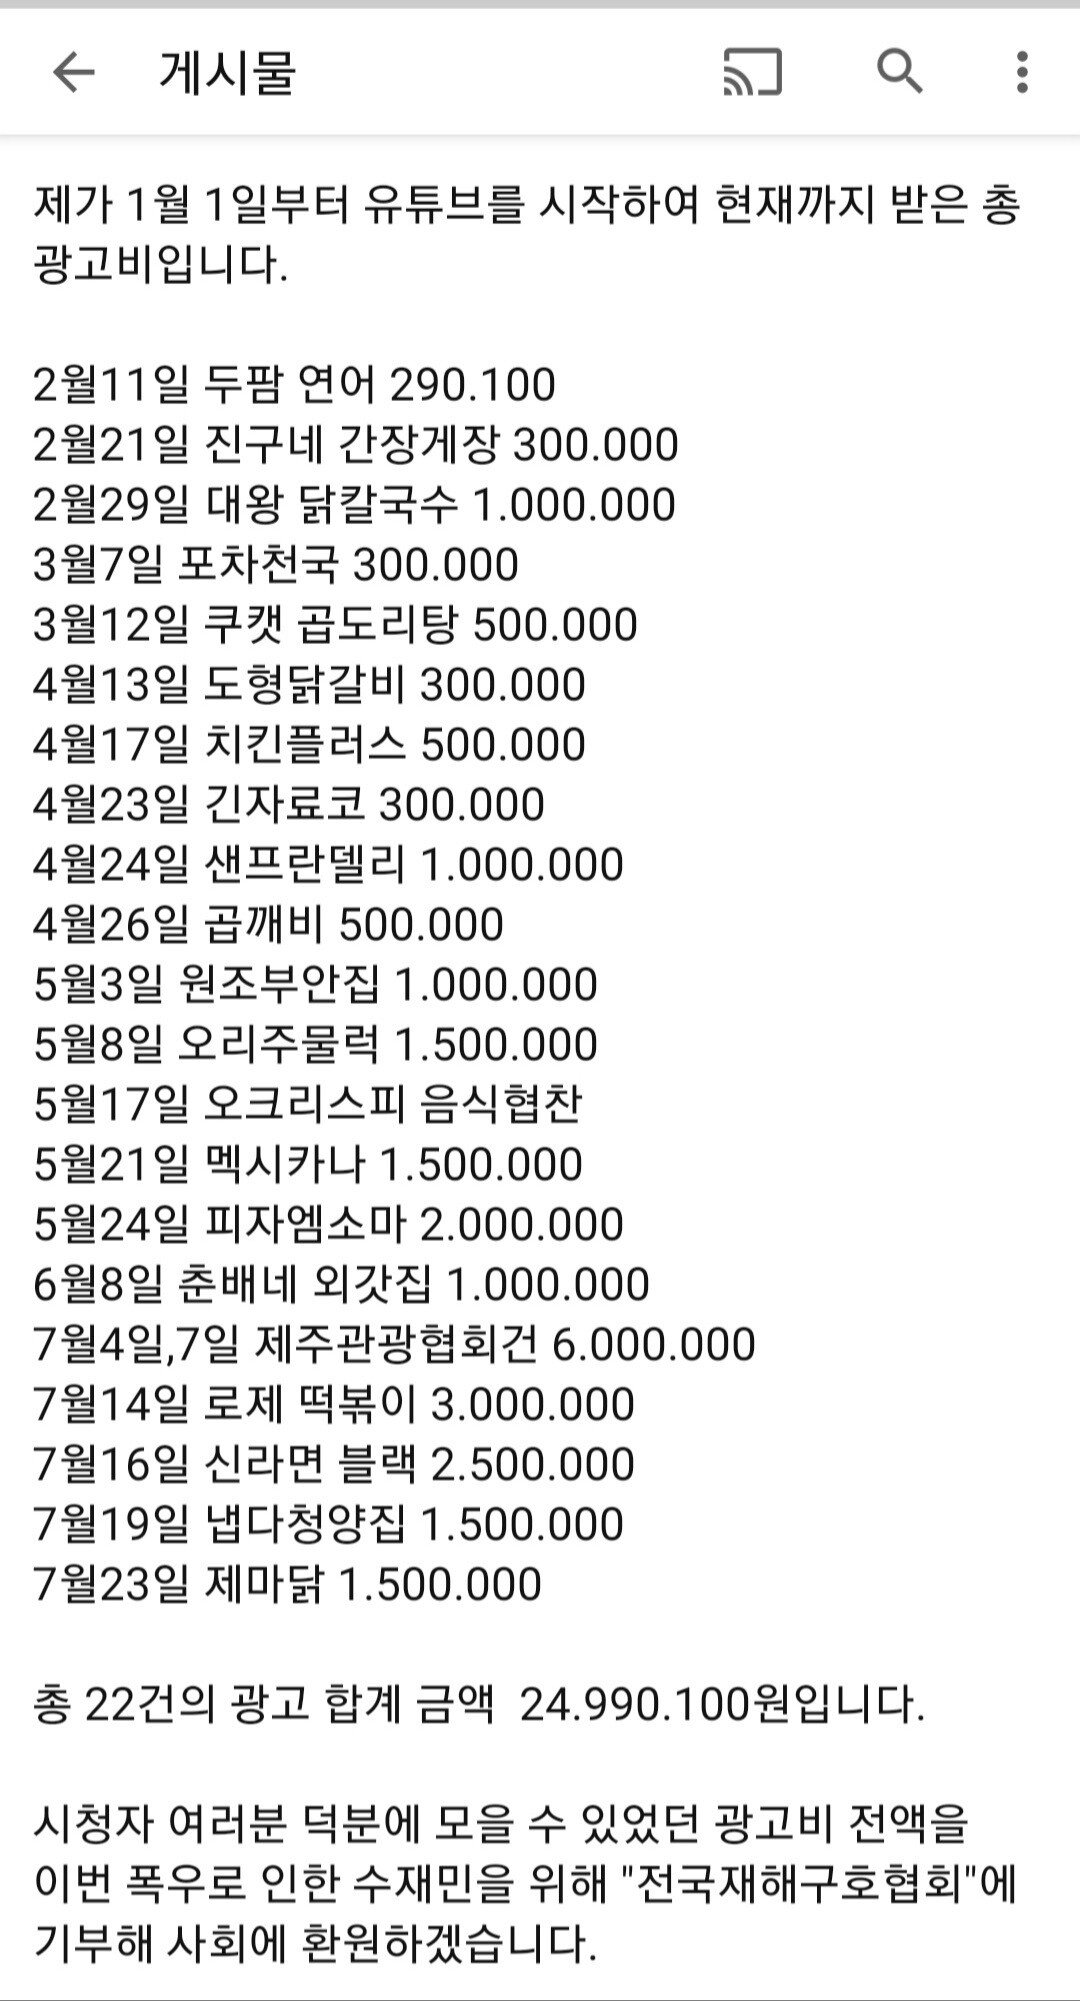 구독자 29만 유튜버 광고비